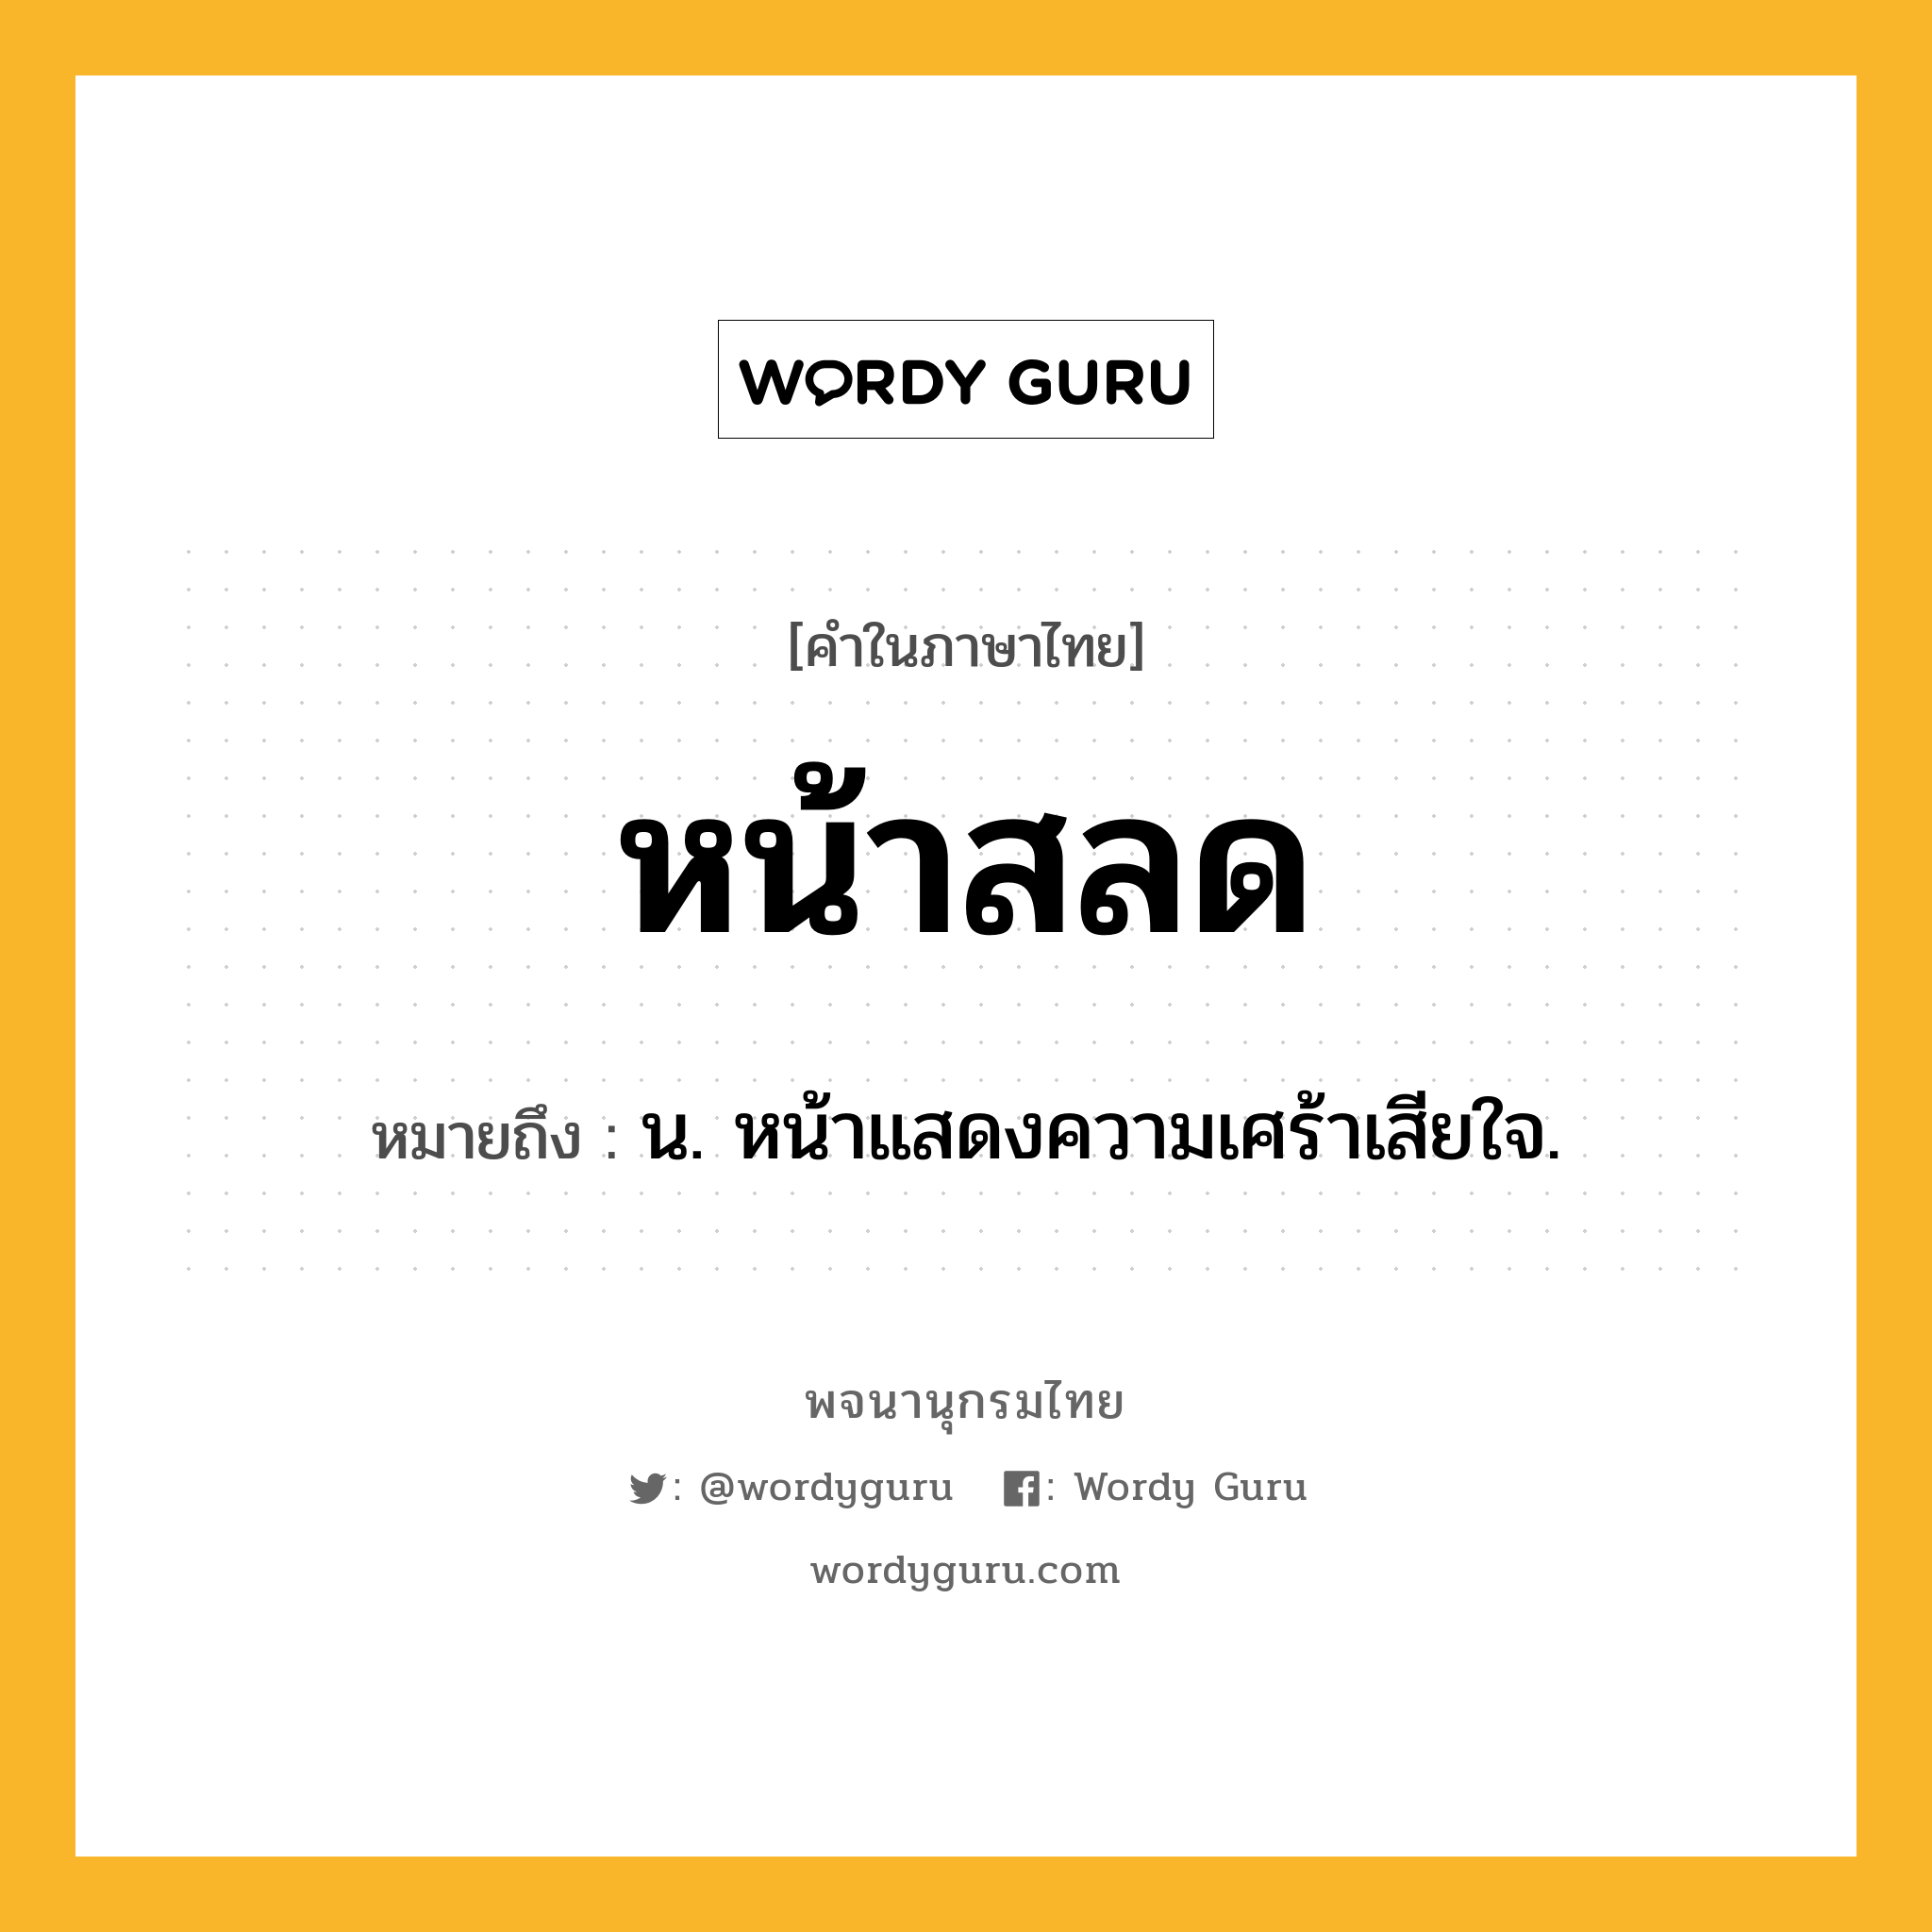 หน้าสลด ความหมาย หมายถึงอะไร?, คำในภาษาไทย หน้าสลด หมายถึง น. หน้าแสดงความเศร้าเสียใจ.